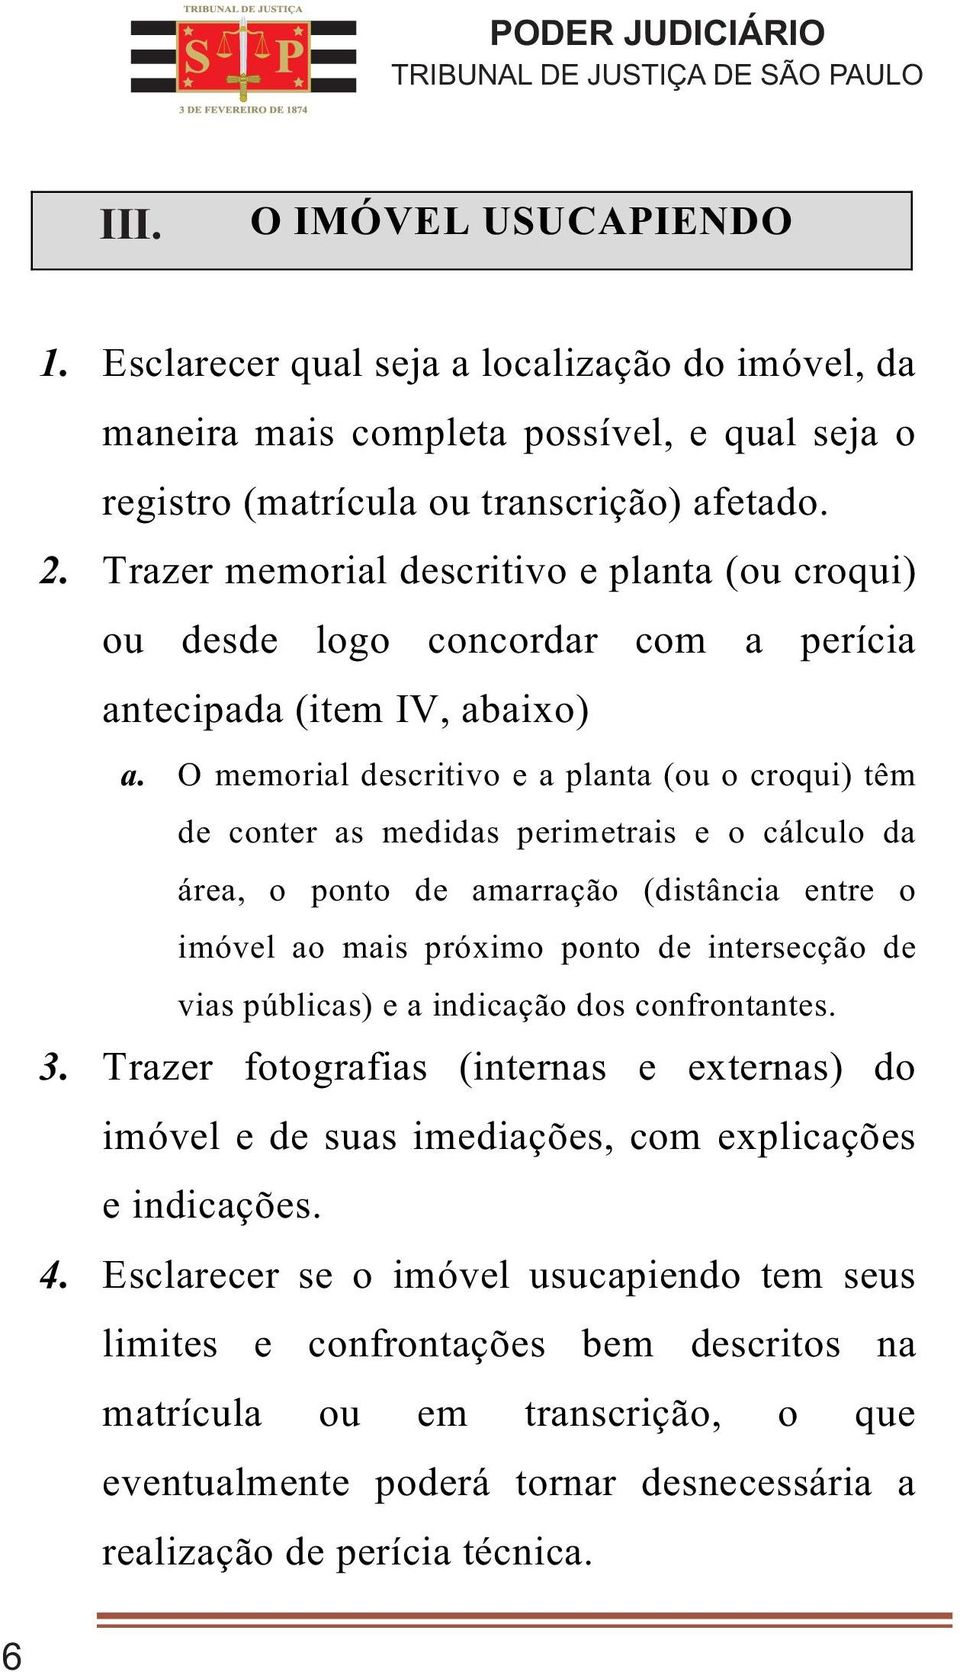 O memorial descritivo e a planta (ou o croqui) têm de conter as medidas perimetrais e o cálculo da área, o ponto de amarração (distância entre o imóvel ao mais próximo ponto de intersecção de vias